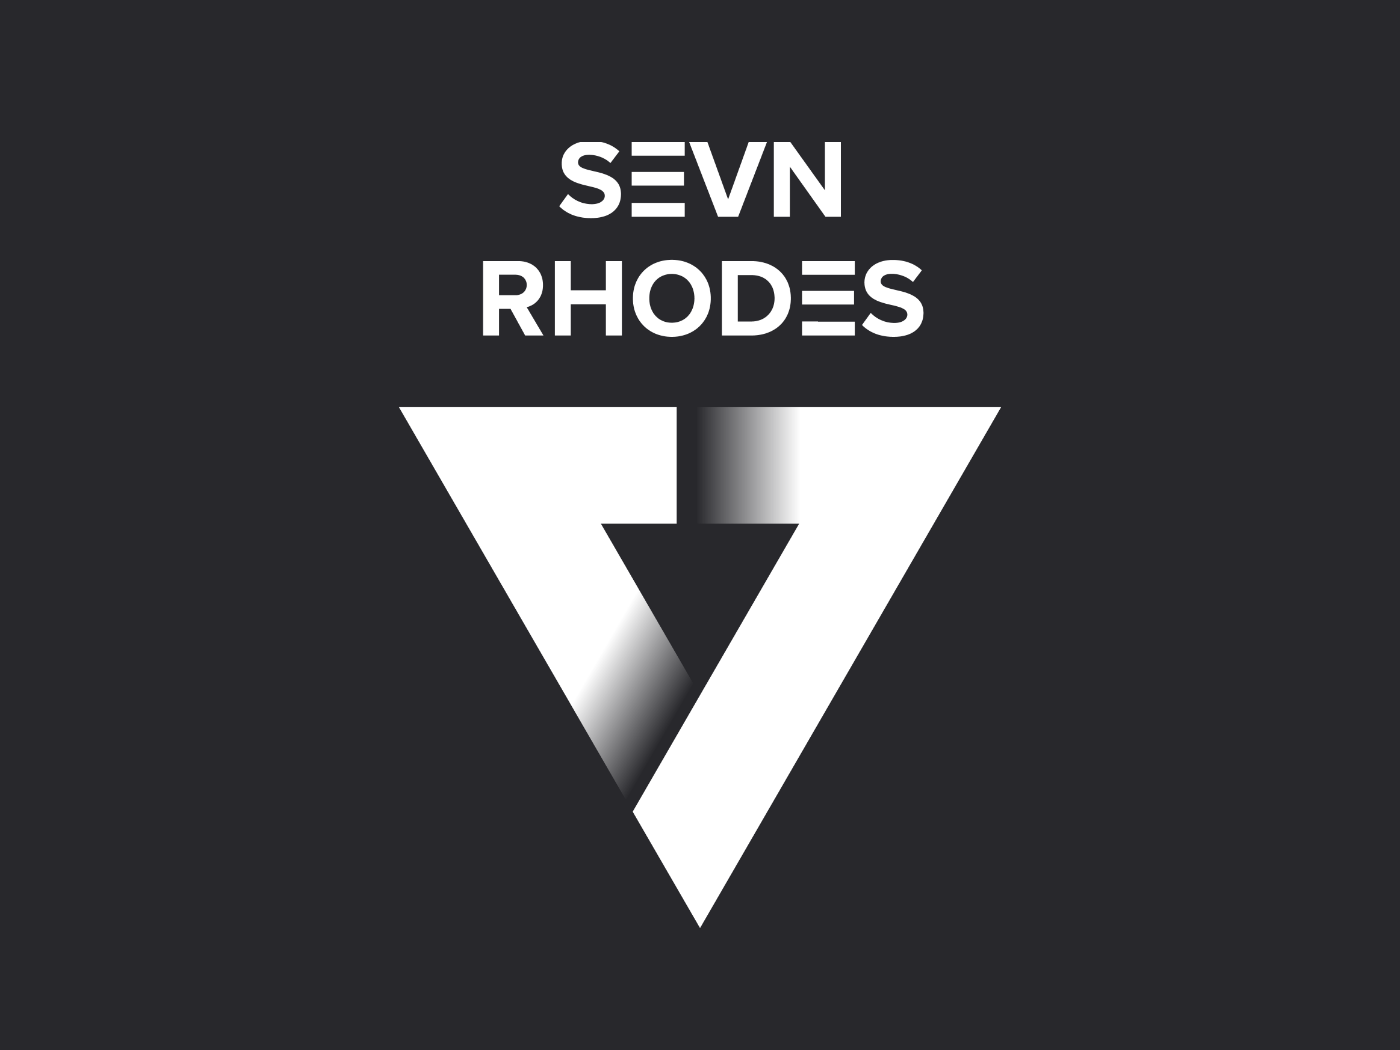 Sevn Logo - Sevn Rhodes logo by Roy Slagter on Dribbble